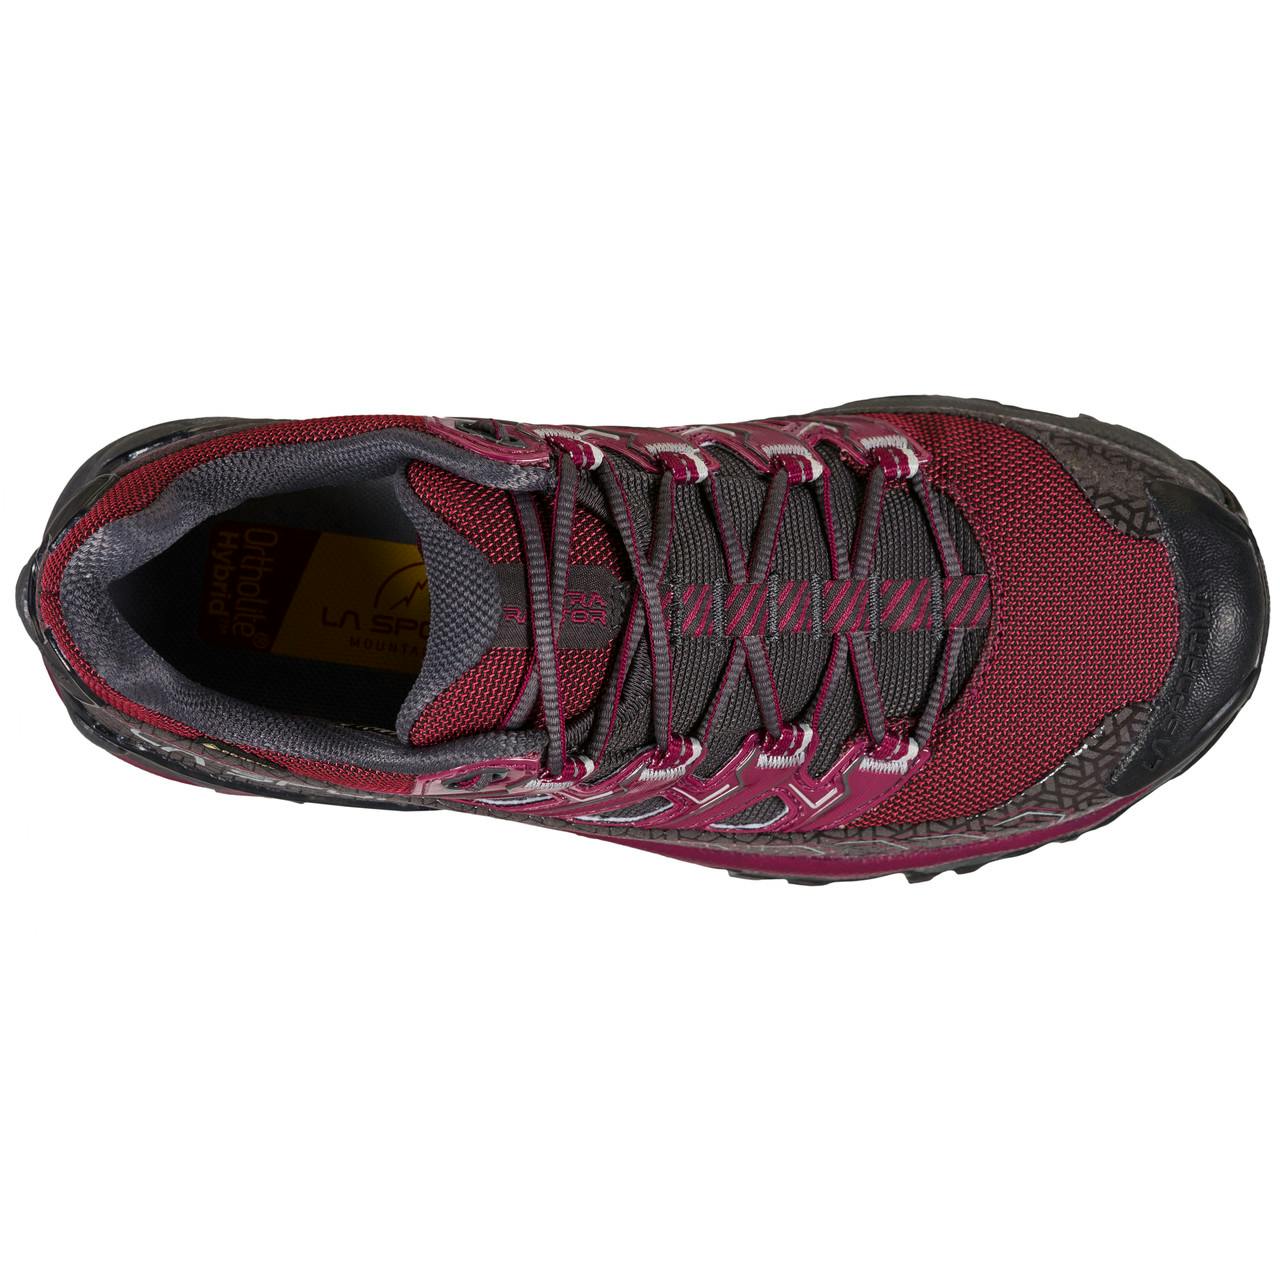 Chaussures de course en sentier Ultra Raptor II Prune Rouge/Carbone